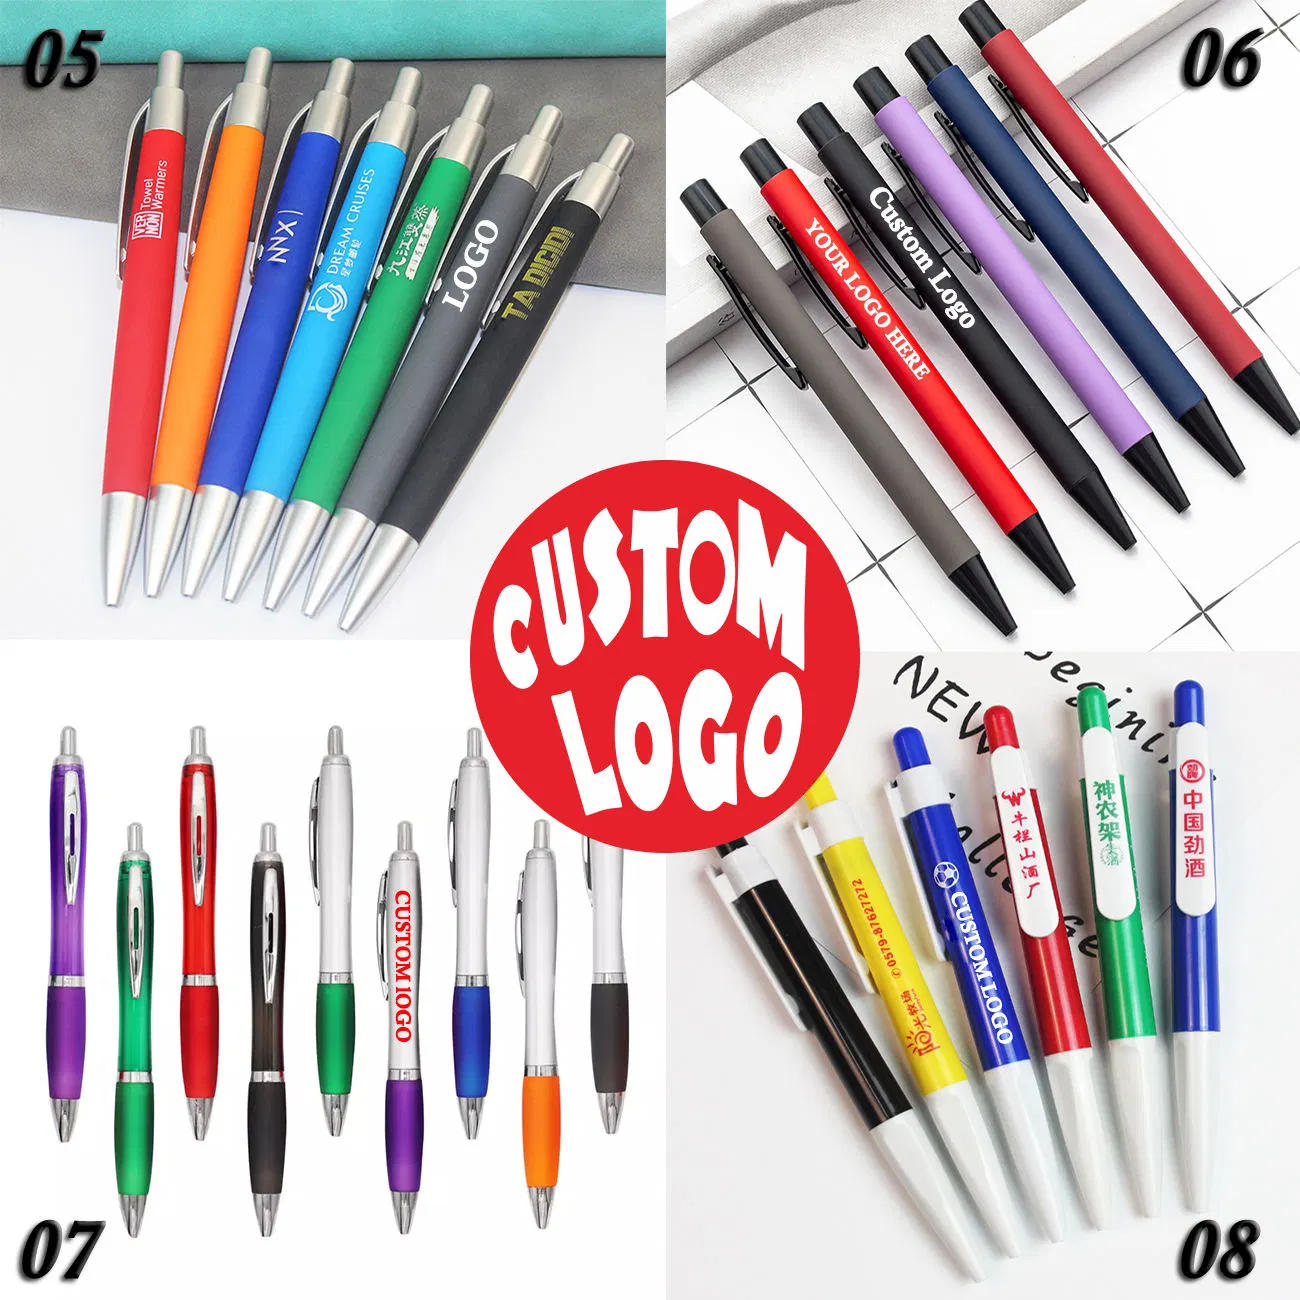 Personalizado com logótipo Print Ball Point Pen publicidade mais barata Promocional Esferográfica personalizada de plástico Pen Gift Metal personalizada